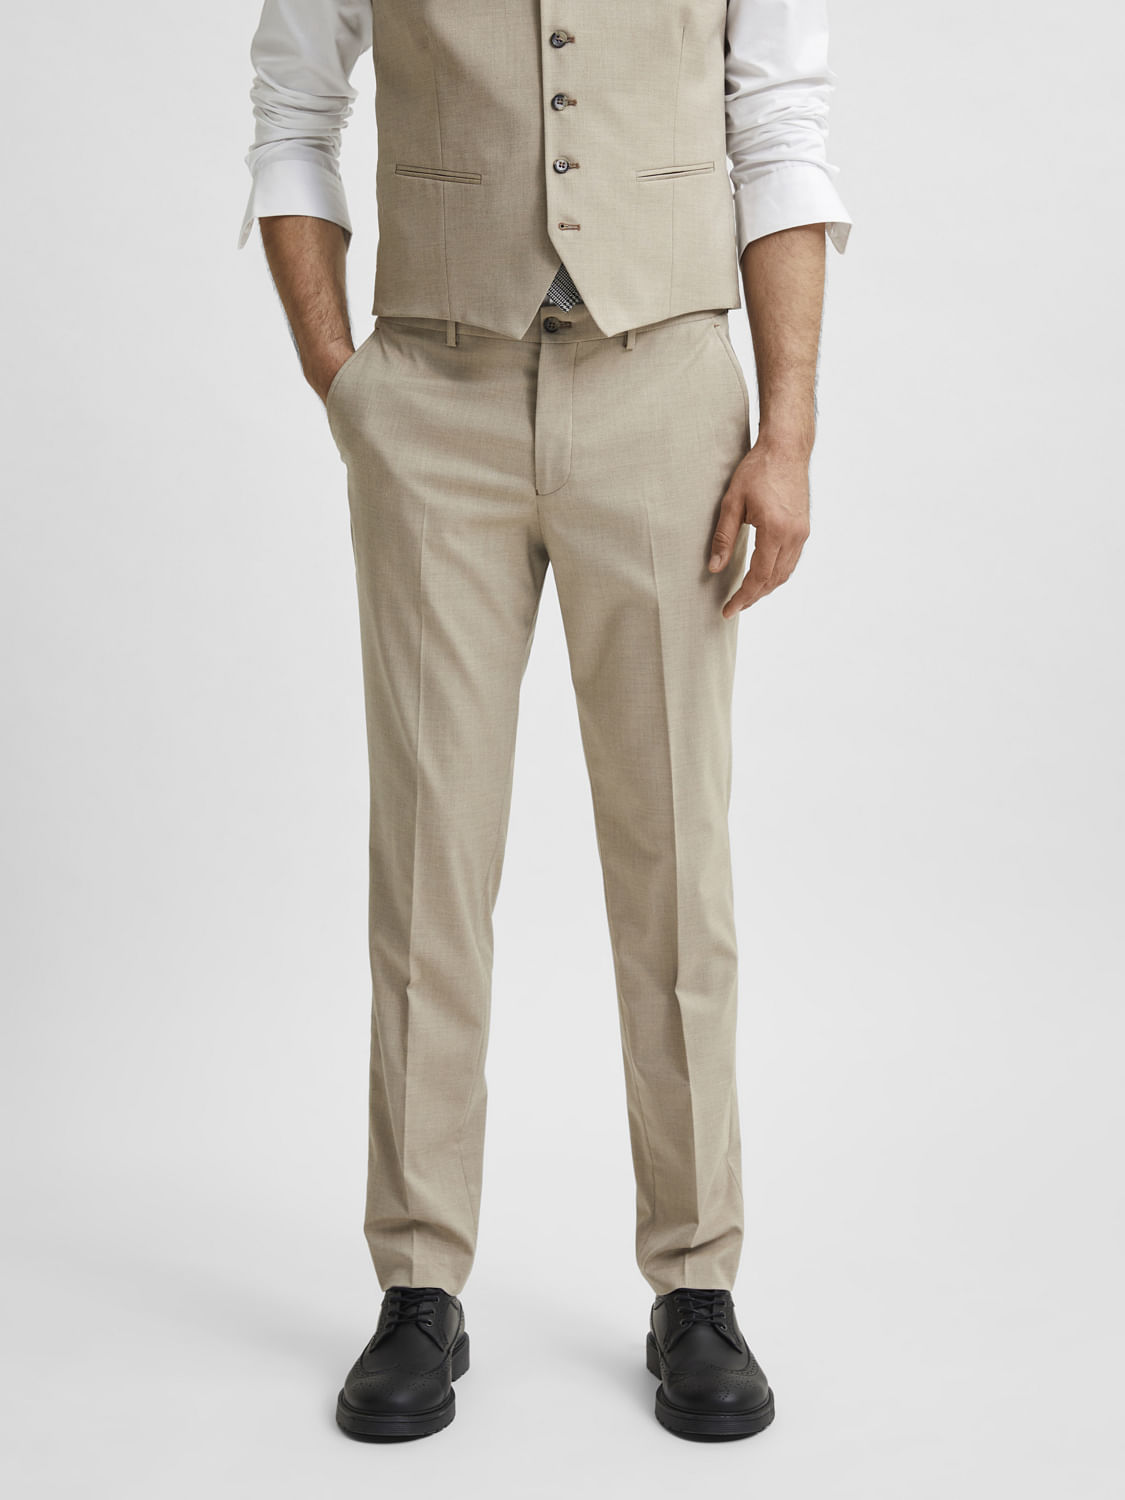 Buy Men Grey Textured Slim Fit Trousers Online - 762768 | Van Heusen